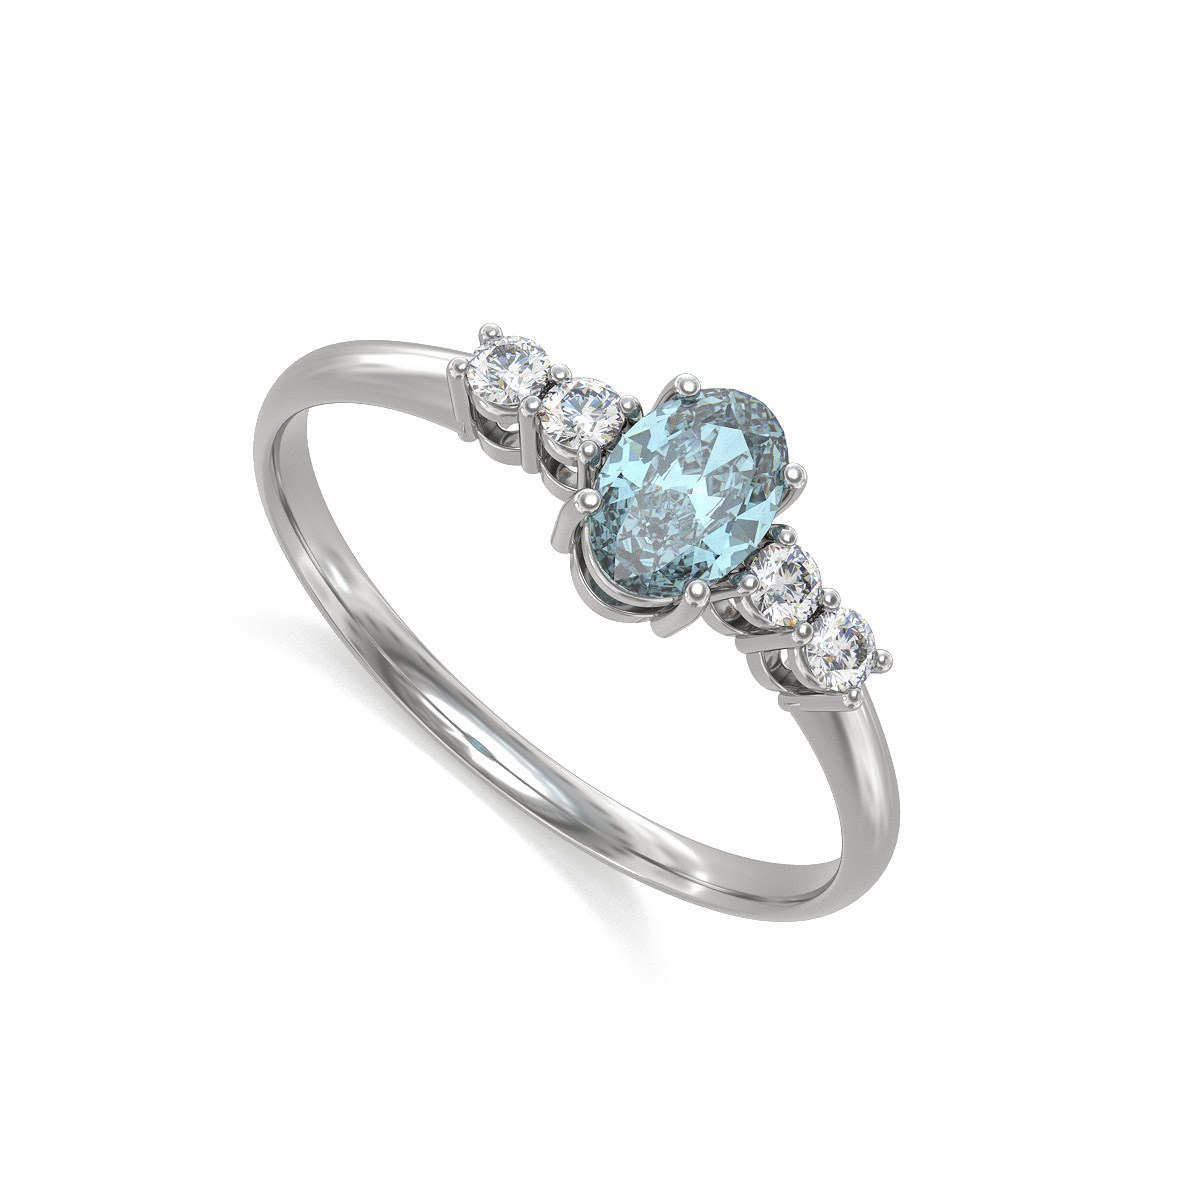 Bague aigue-marine et diamants en argent 925 : un bijou délicat et élégant | Aden Boutique